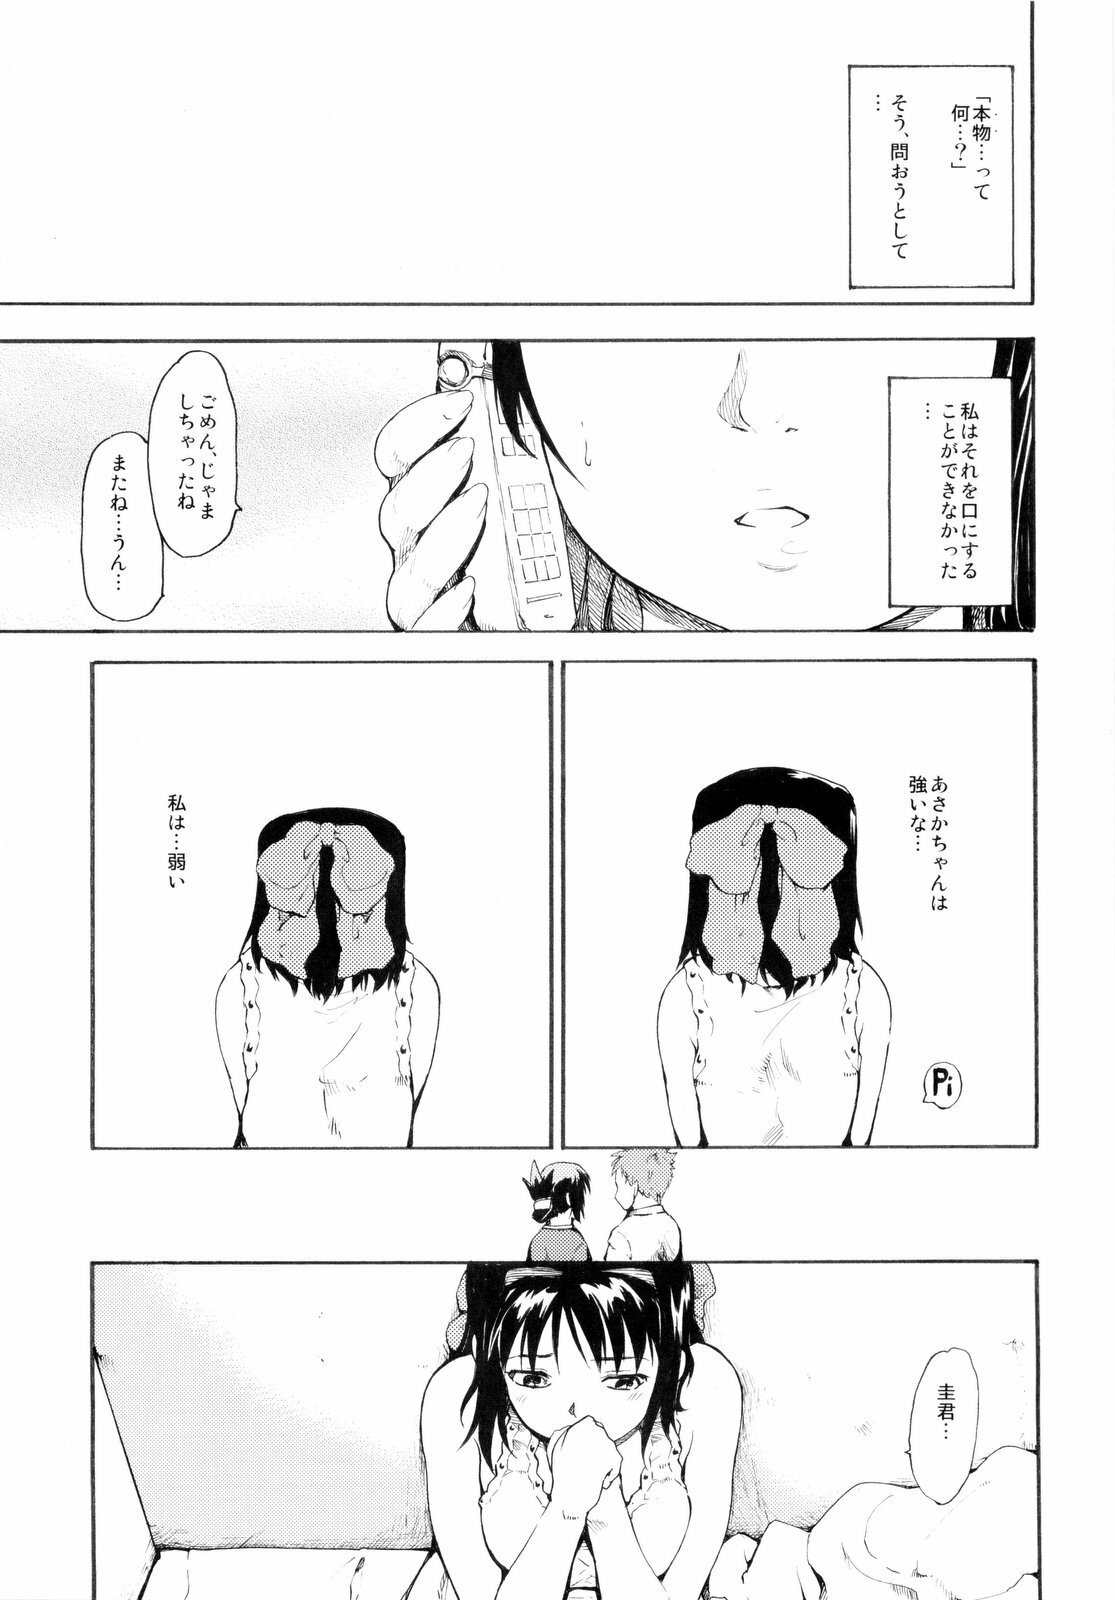 (ComiComi13) [Paranoia Cat (Fujiwara Shunichi)] Akogare no Hito -Himitsu no Isshuukan- #3 page 25 full